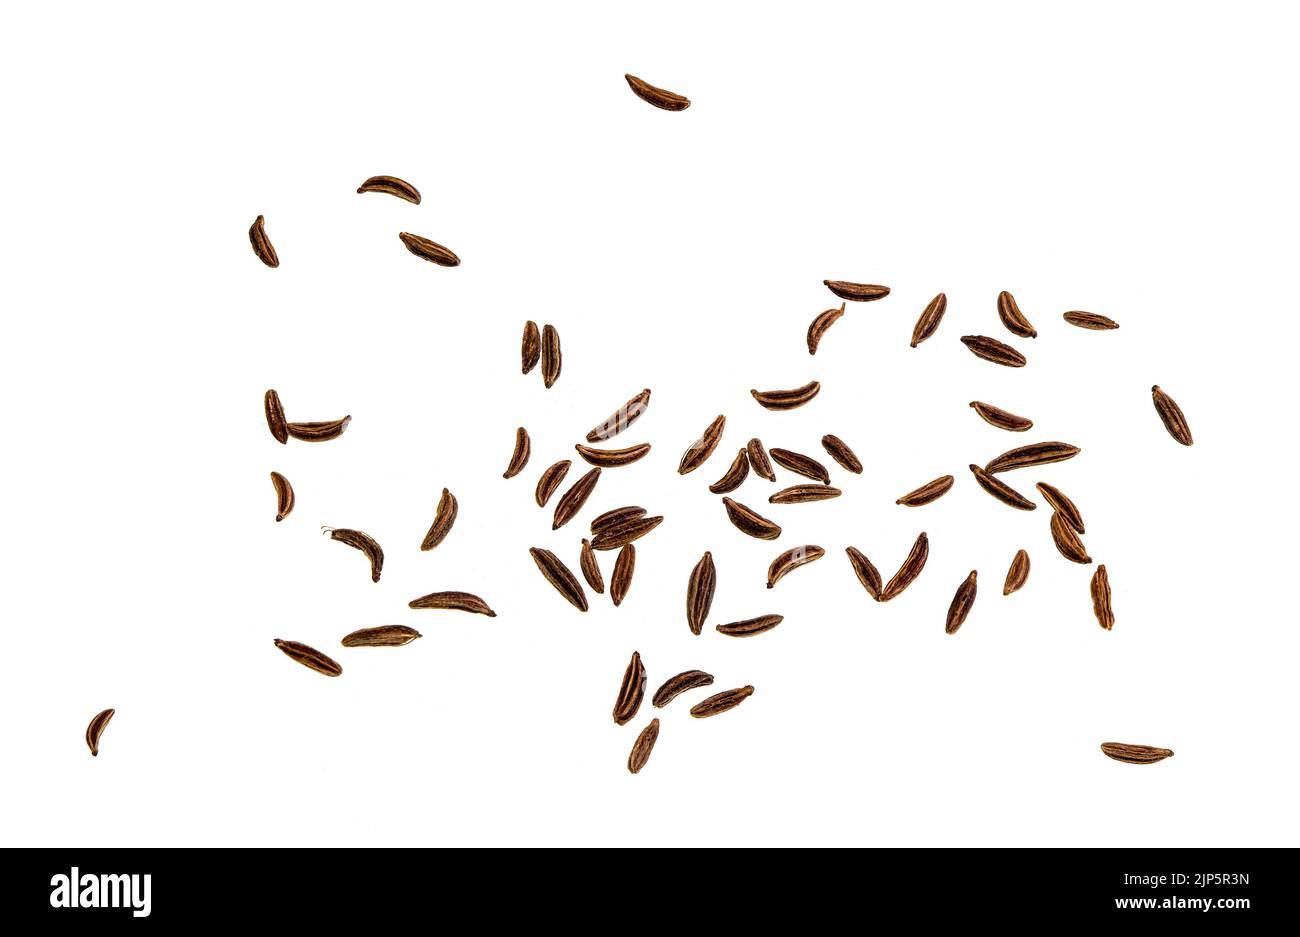 Kümmel-Samen sind die getrockneten Früchte der Kümmel-Pflanze, Carum carvi, eine zweijährige Pflanze aus der Familie der Apiaceae, die aus Westasien, Europa und Nor stammt Stockfoto